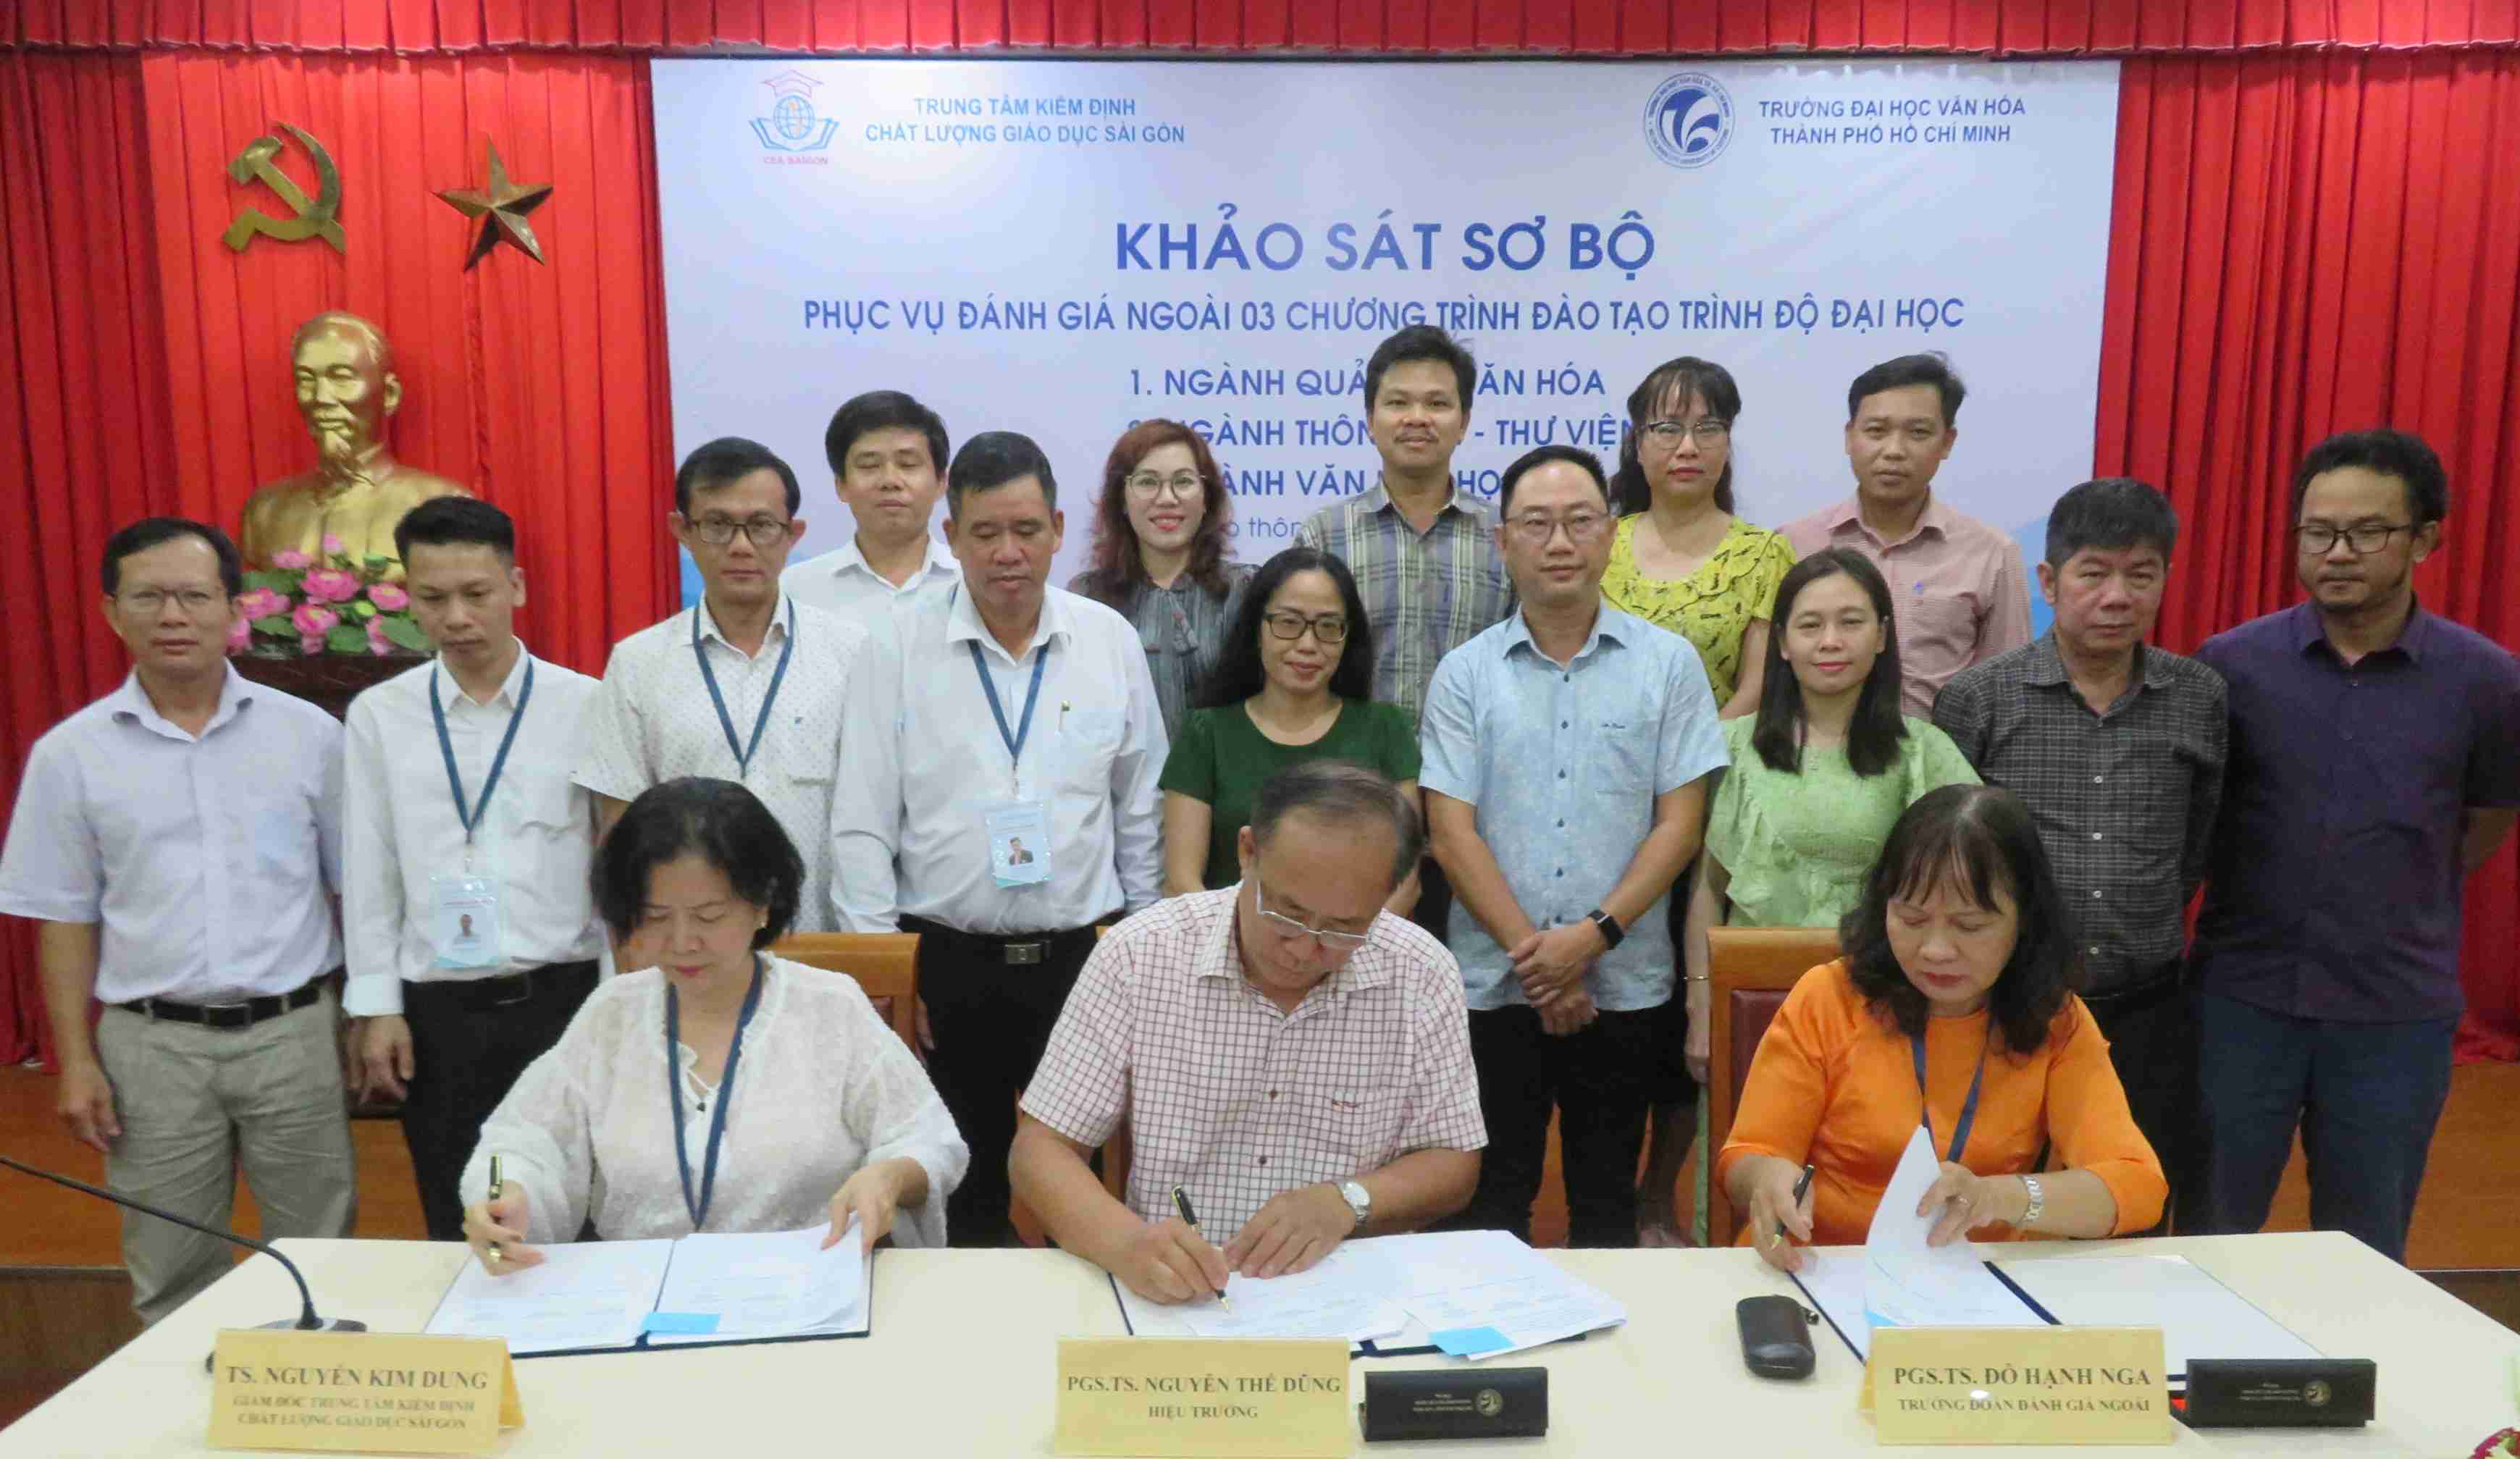 Khảo sát sơ bộ đánh giá chất lượng 03 chương trình đào tạo trình độ đại học của bet365 mobile bet
. Hồ Chí Minh